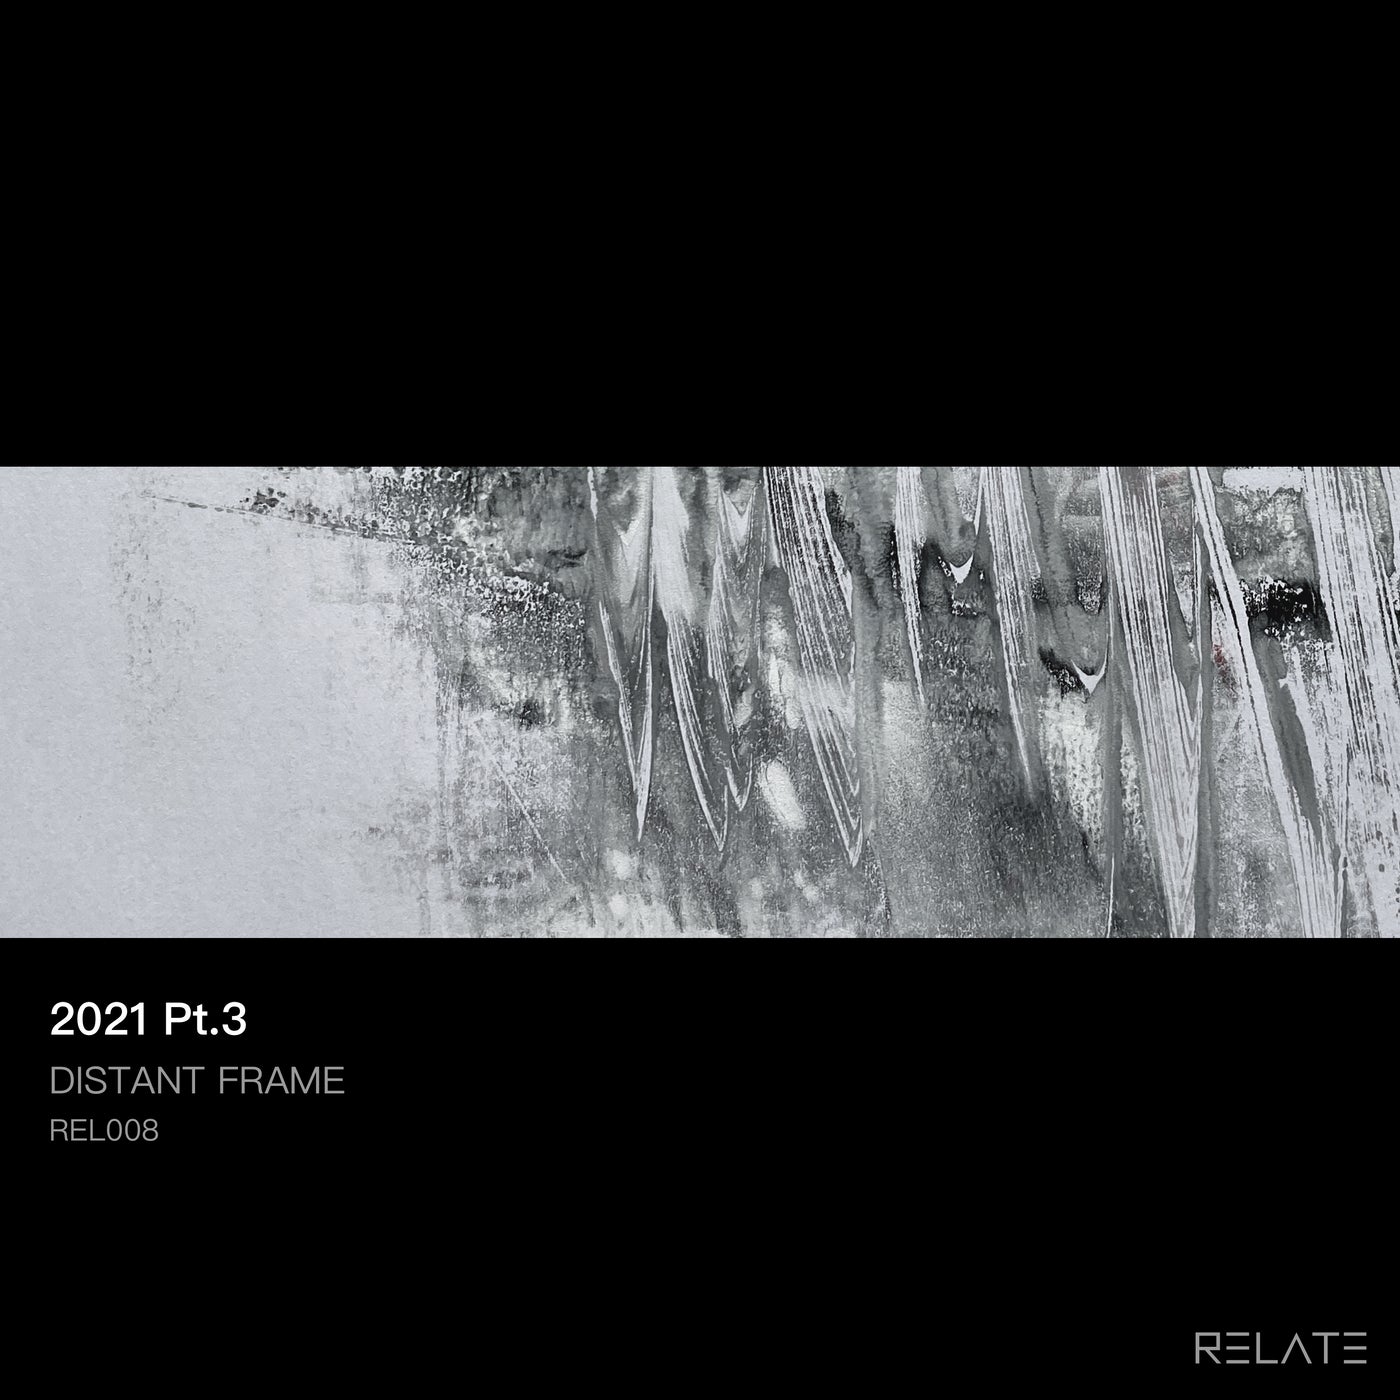 Distant Frame – 2021 Pt.3 [REL008]